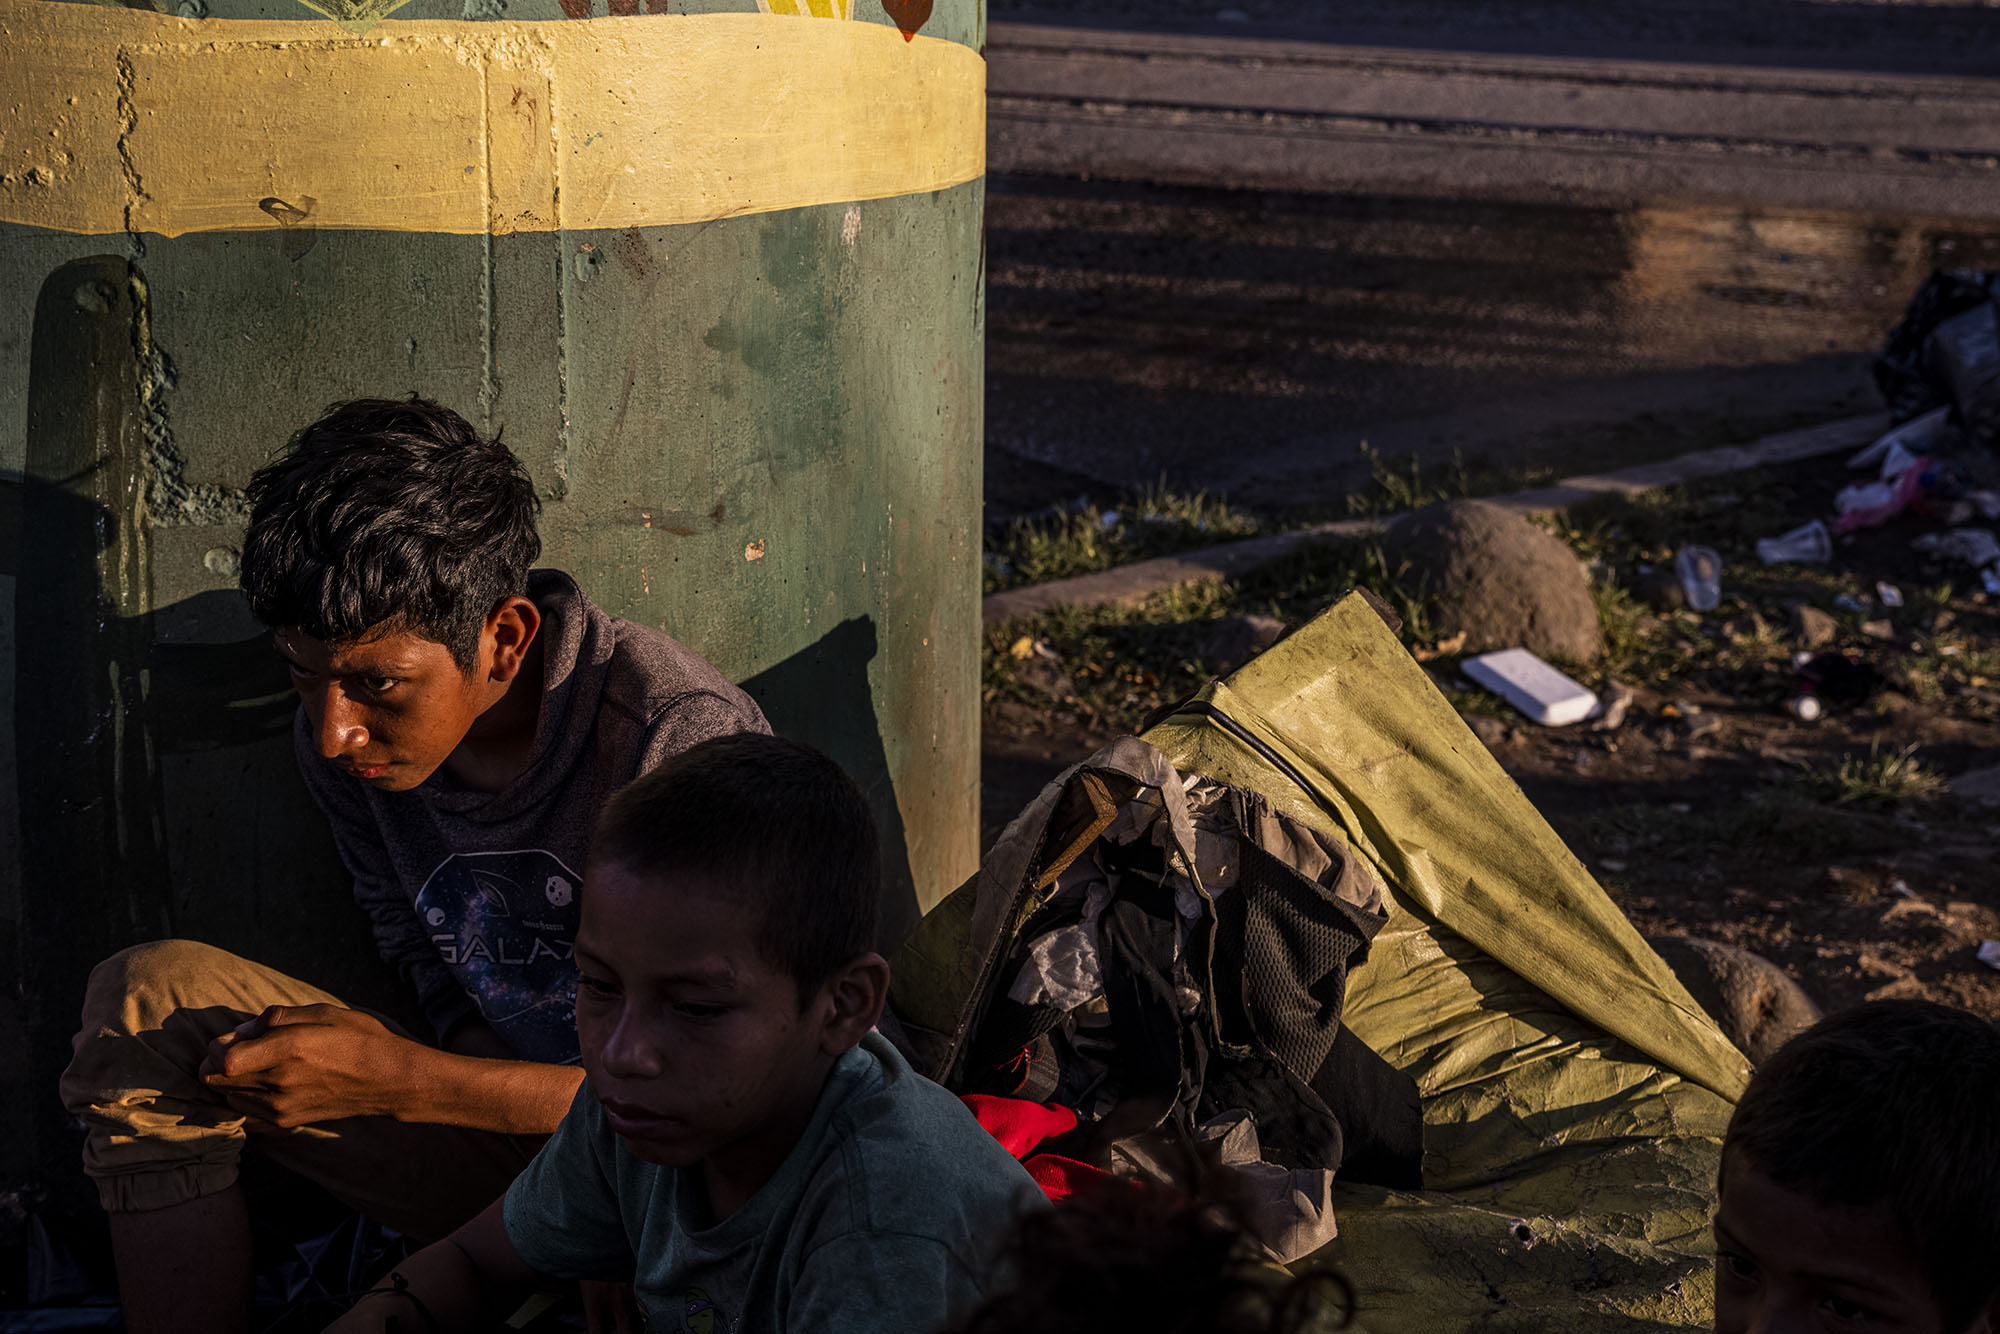 The Ramirez family waits under a bridge for the train heading to Monterrey.